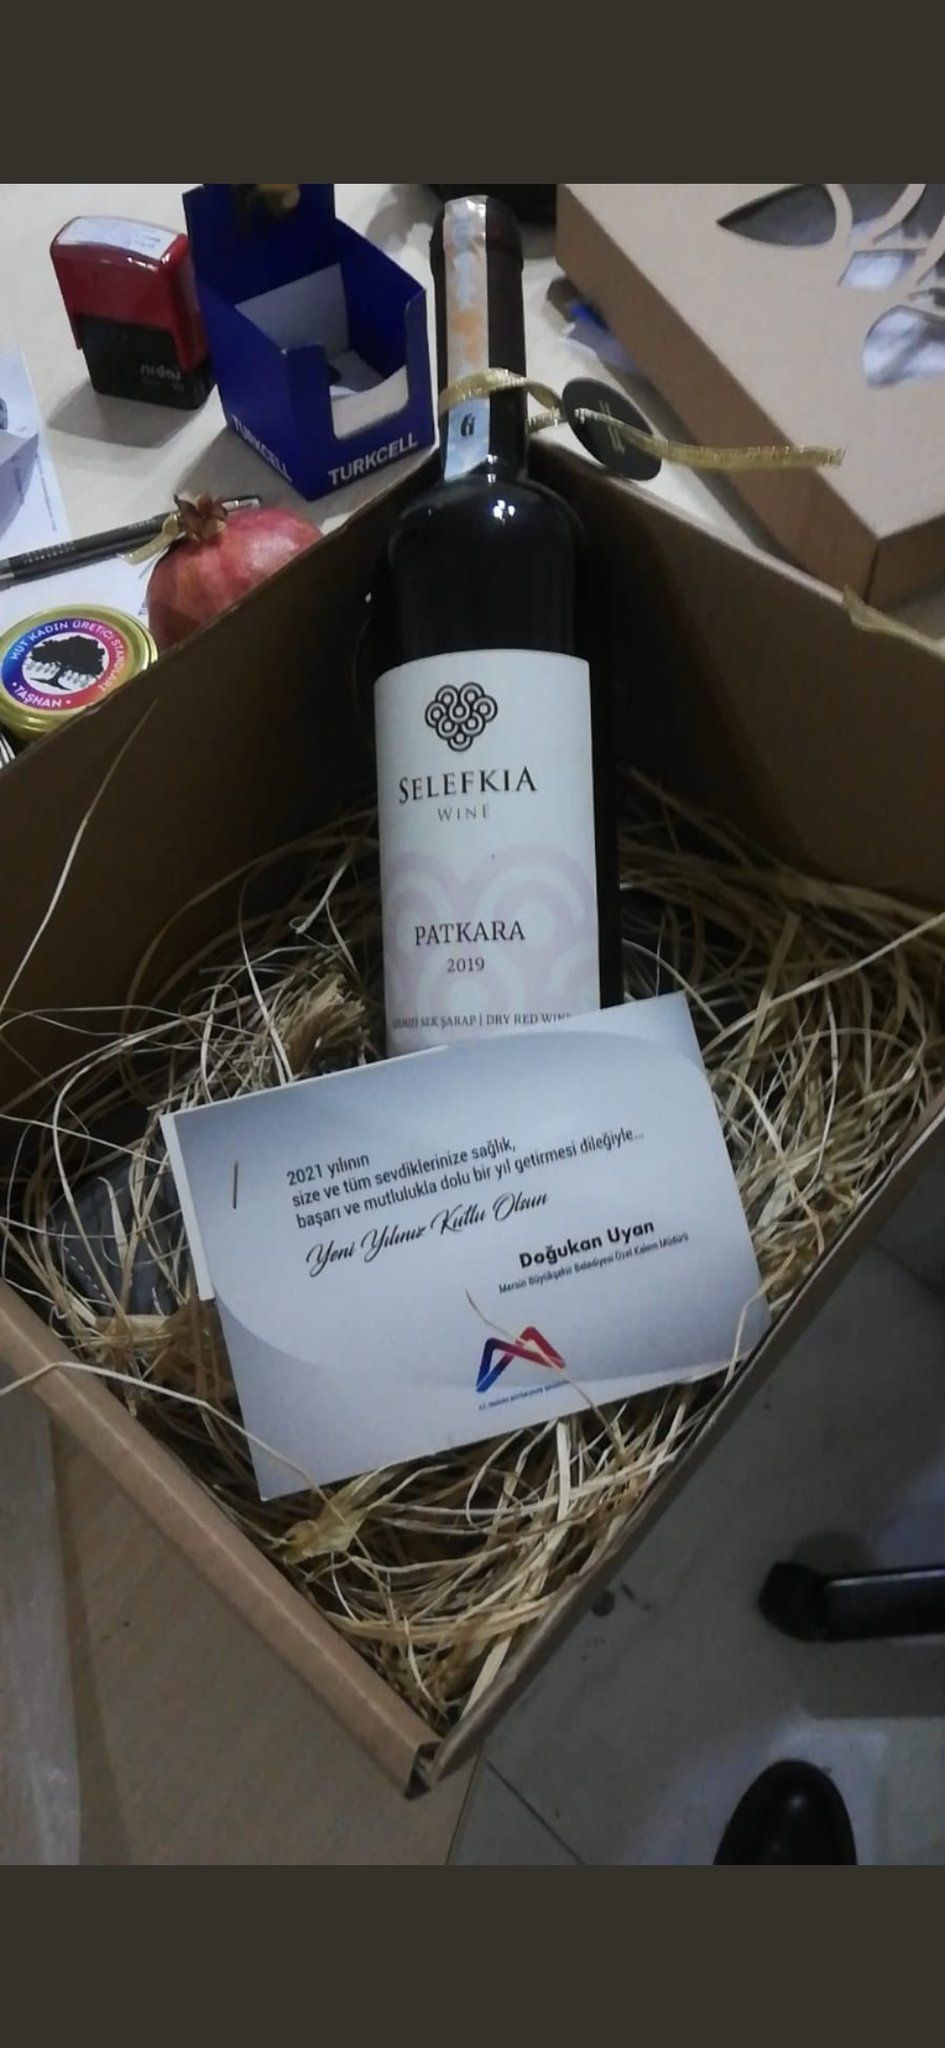 CHP'li belediye yılbaşı hediyesi olarak şarap yolladı!